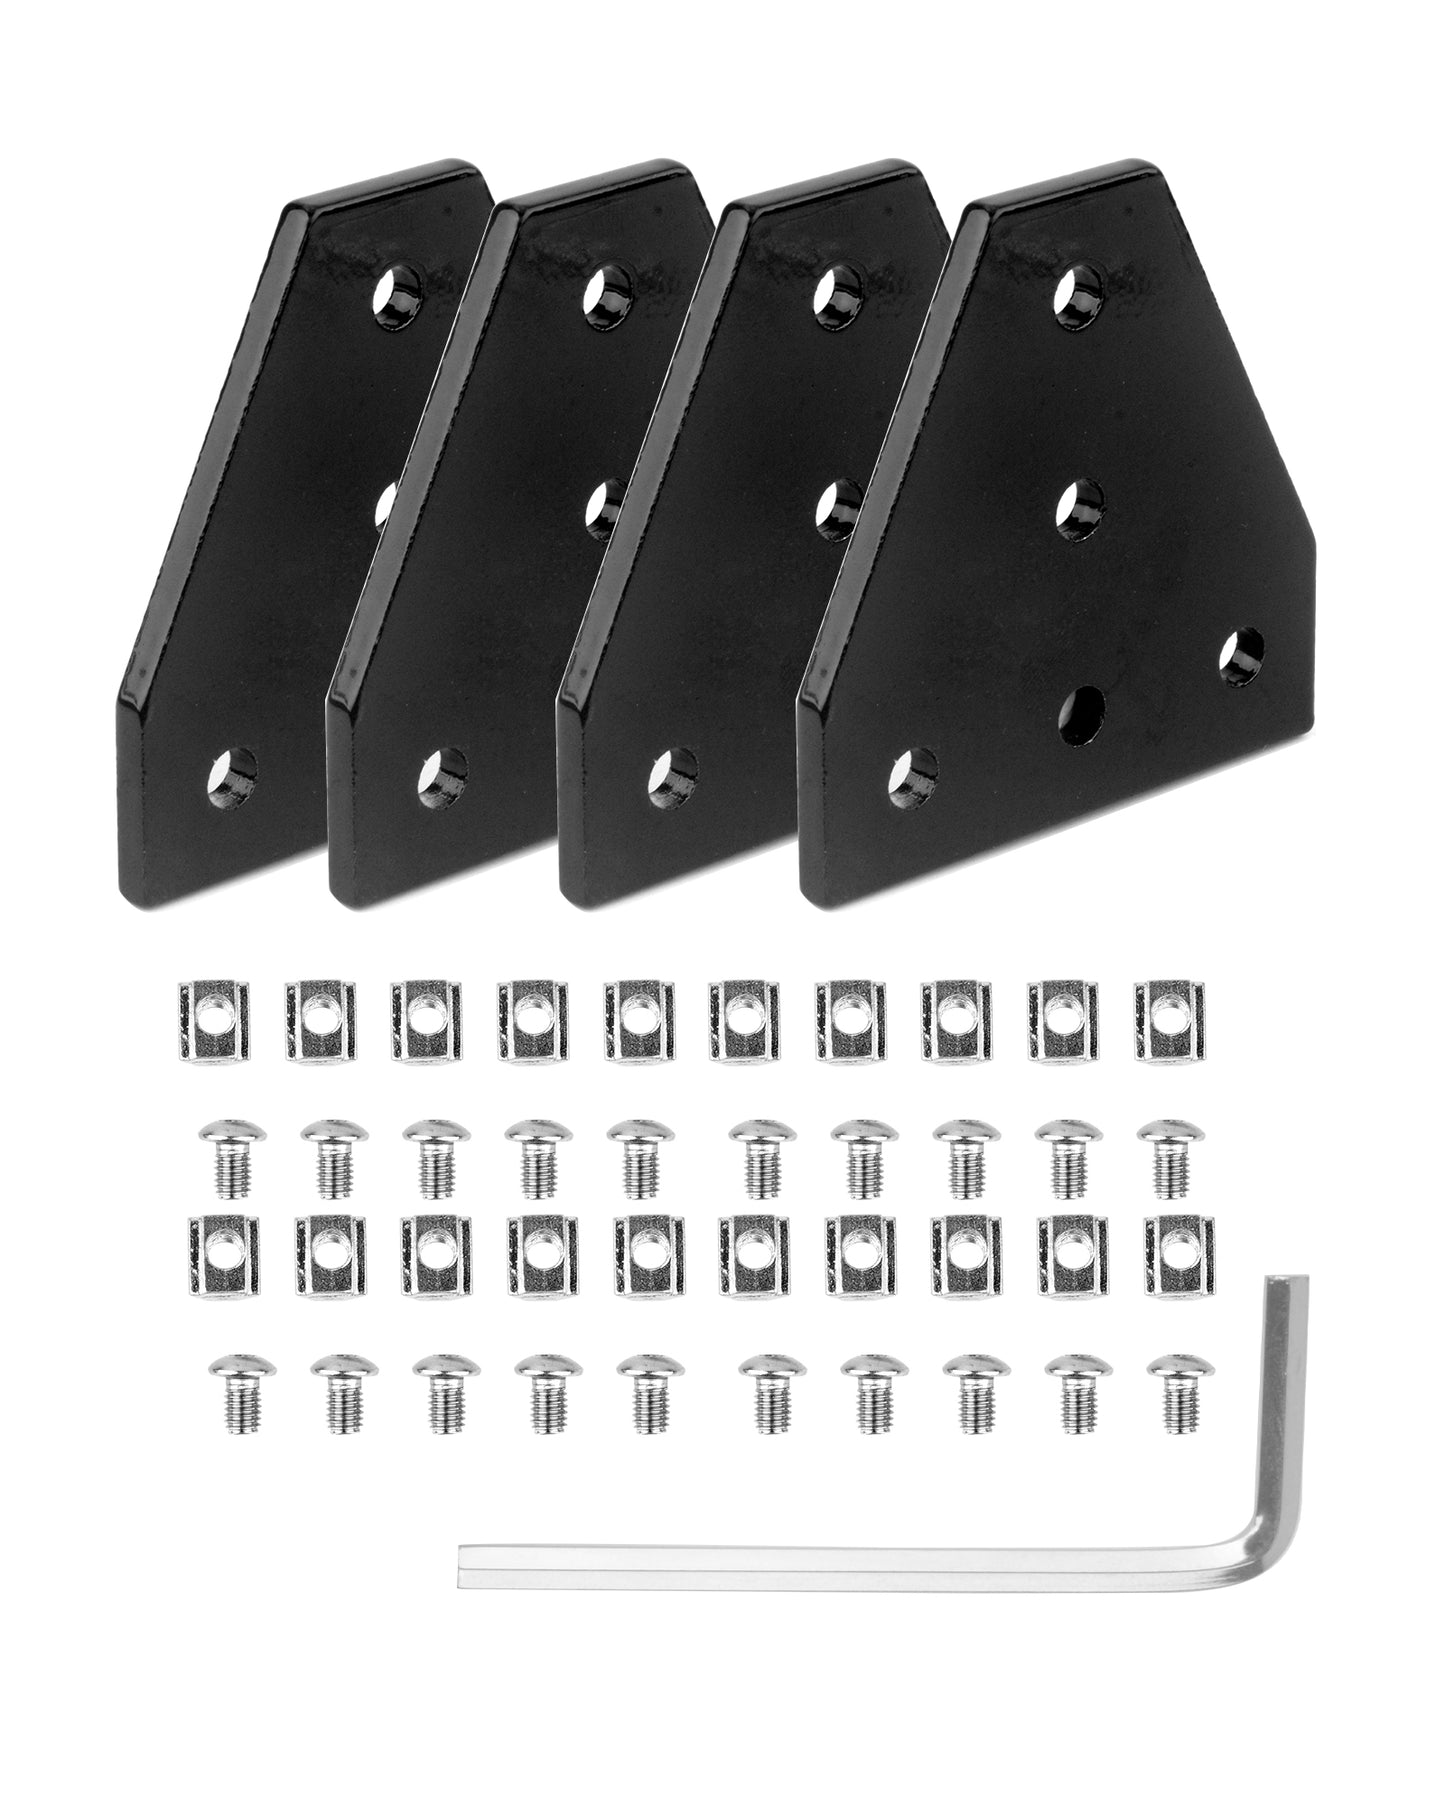 4x Eckhalterungsplatte Winkelplatte T-Form 2020 Nut 6 Verbindungsplatte Schwarz